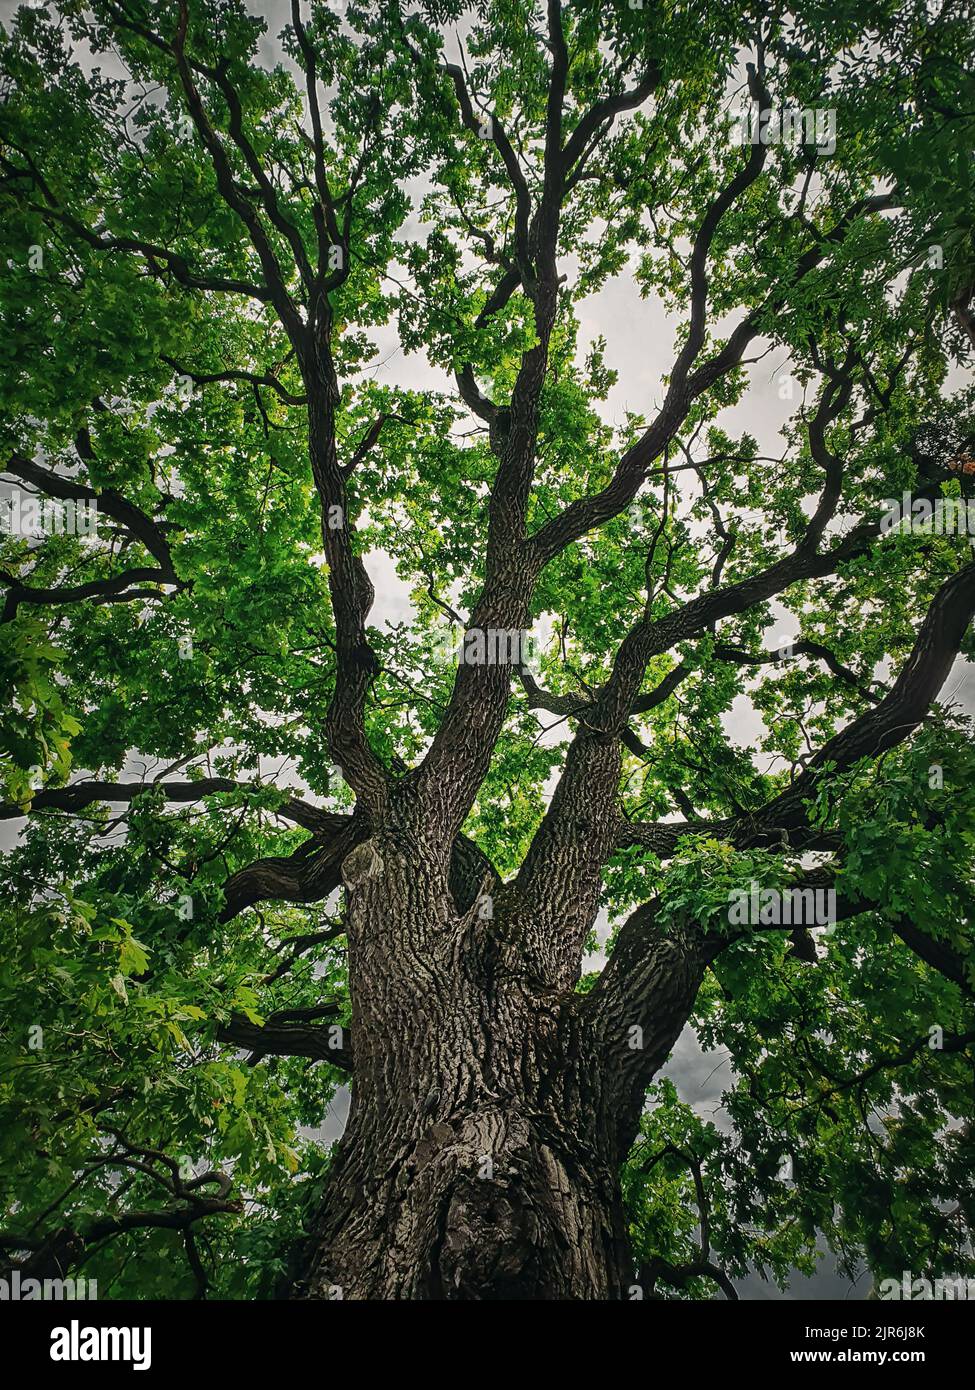 Uno sguardo alla corona verde di una quercia peduncolare di 350 anni situata vicino al monastero di Curchi a Orhei, Moldova. Albero maestoso come punto di riferimento naturale Foto Stock